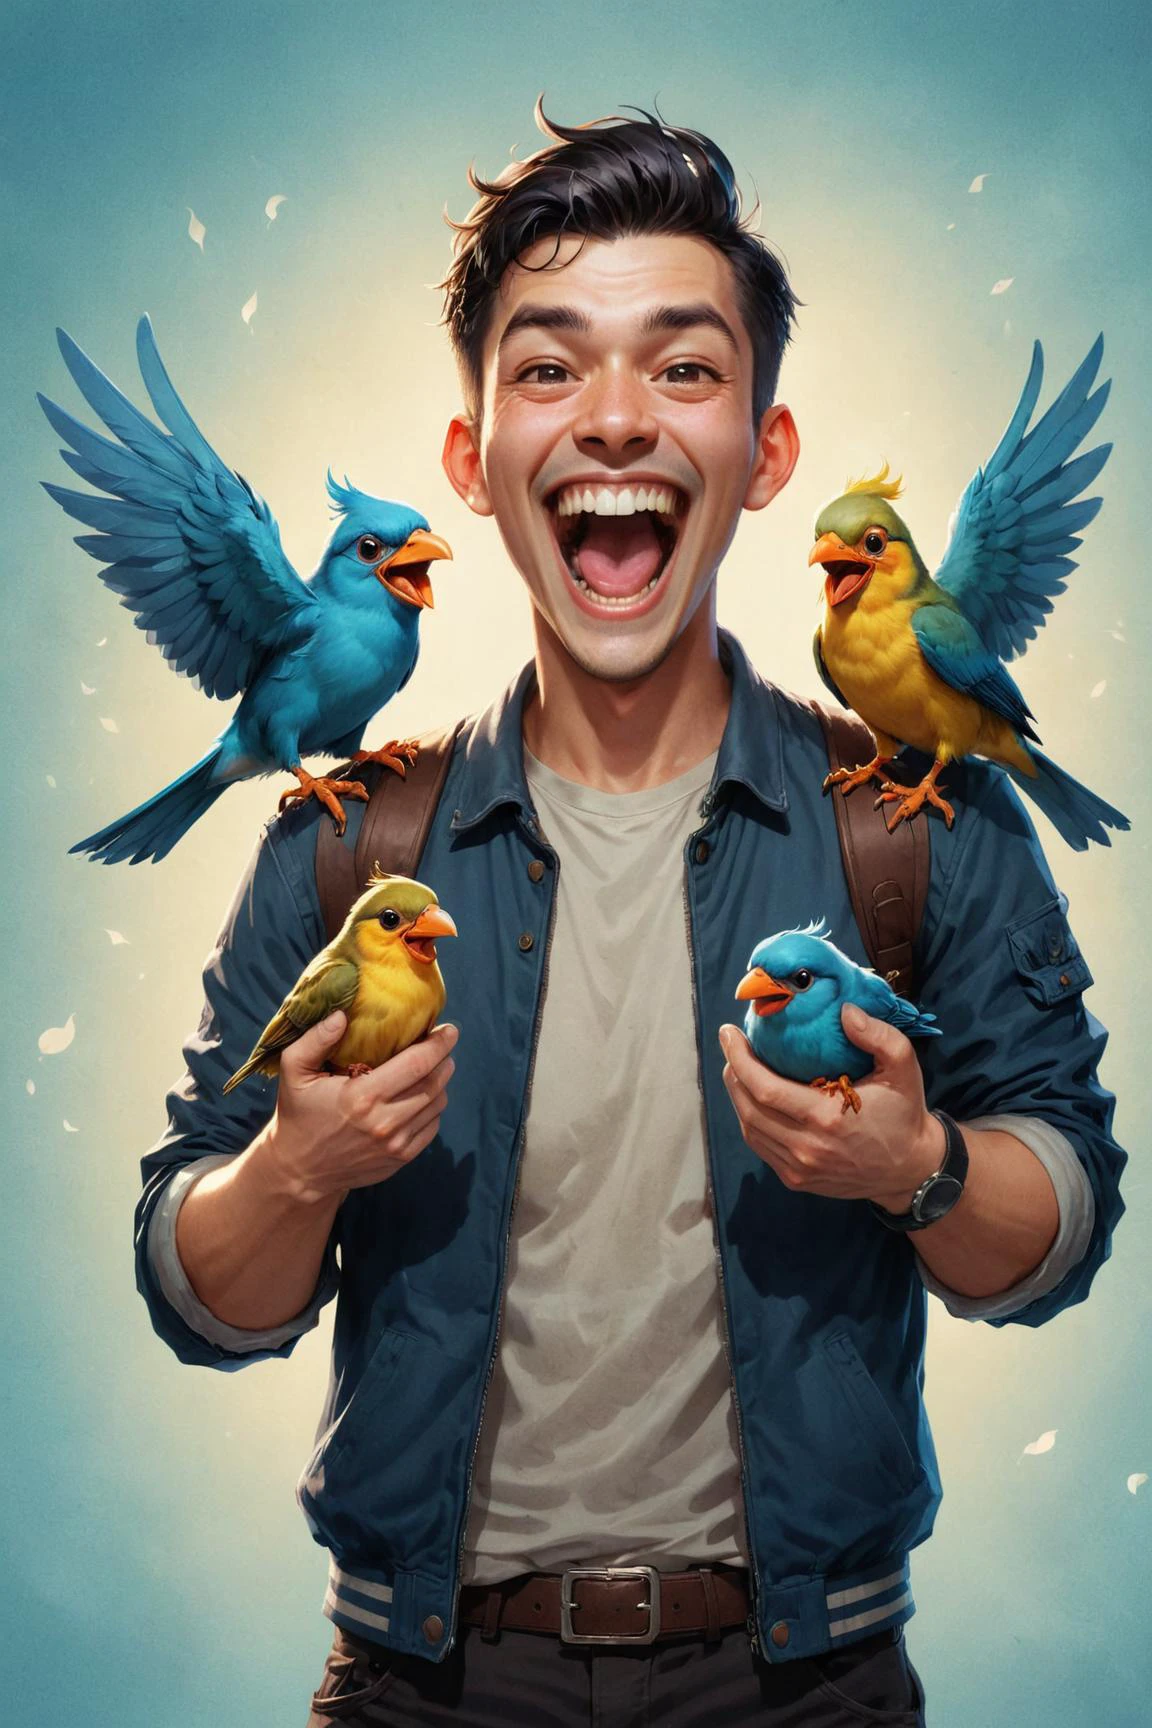 經過 (( 路易斯·范巴尔勒和古威兹 )) 風格 [[ Kelly Mckernan、Duy Huynh 和 Ralph Horsley ]],  男子舉起兩隻可愛的小鳥，瘋狂地大笑, 雙持鳥 